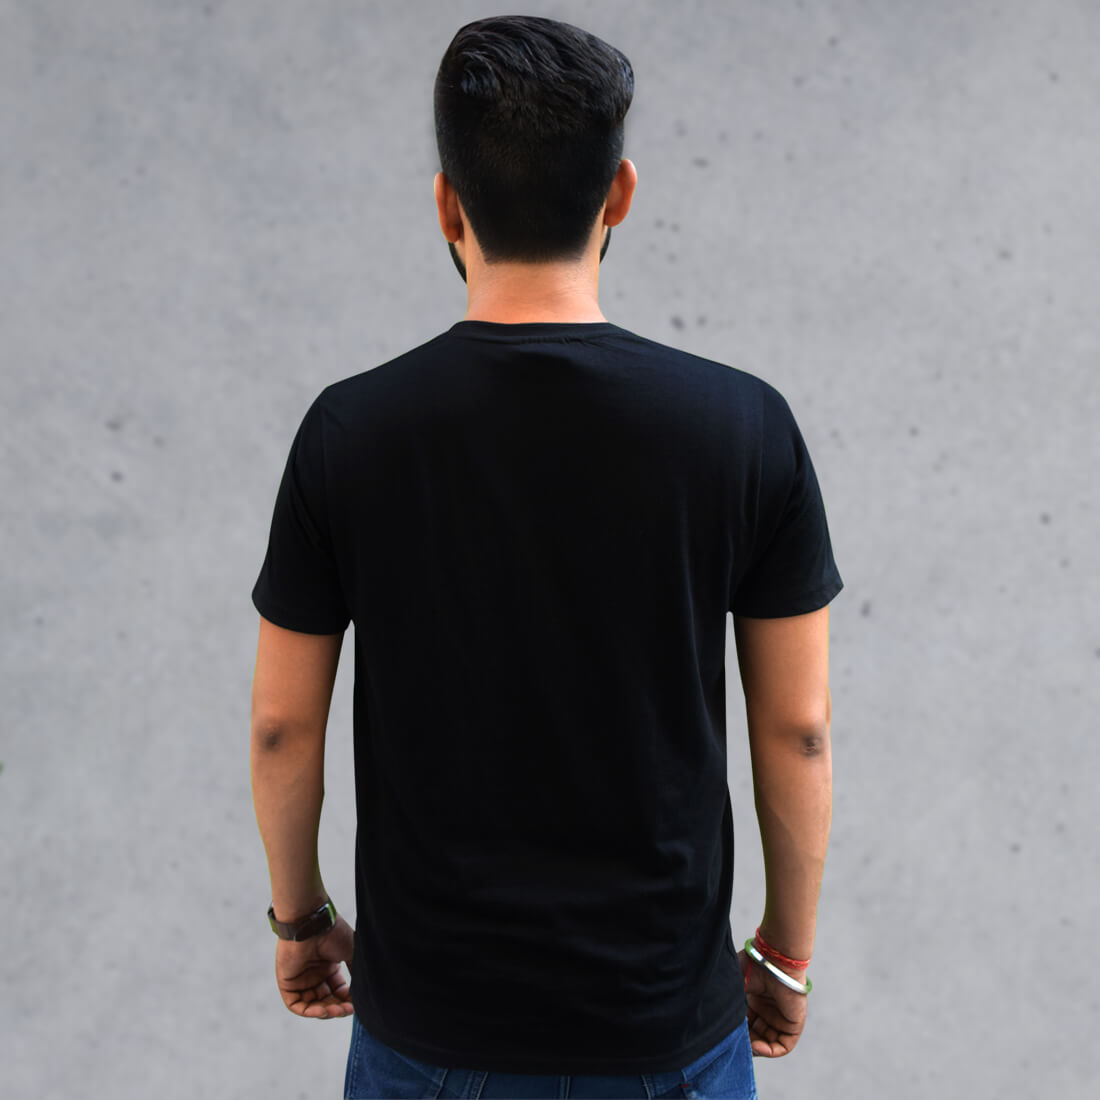 Best Ganesha Design black t-shirt front and back